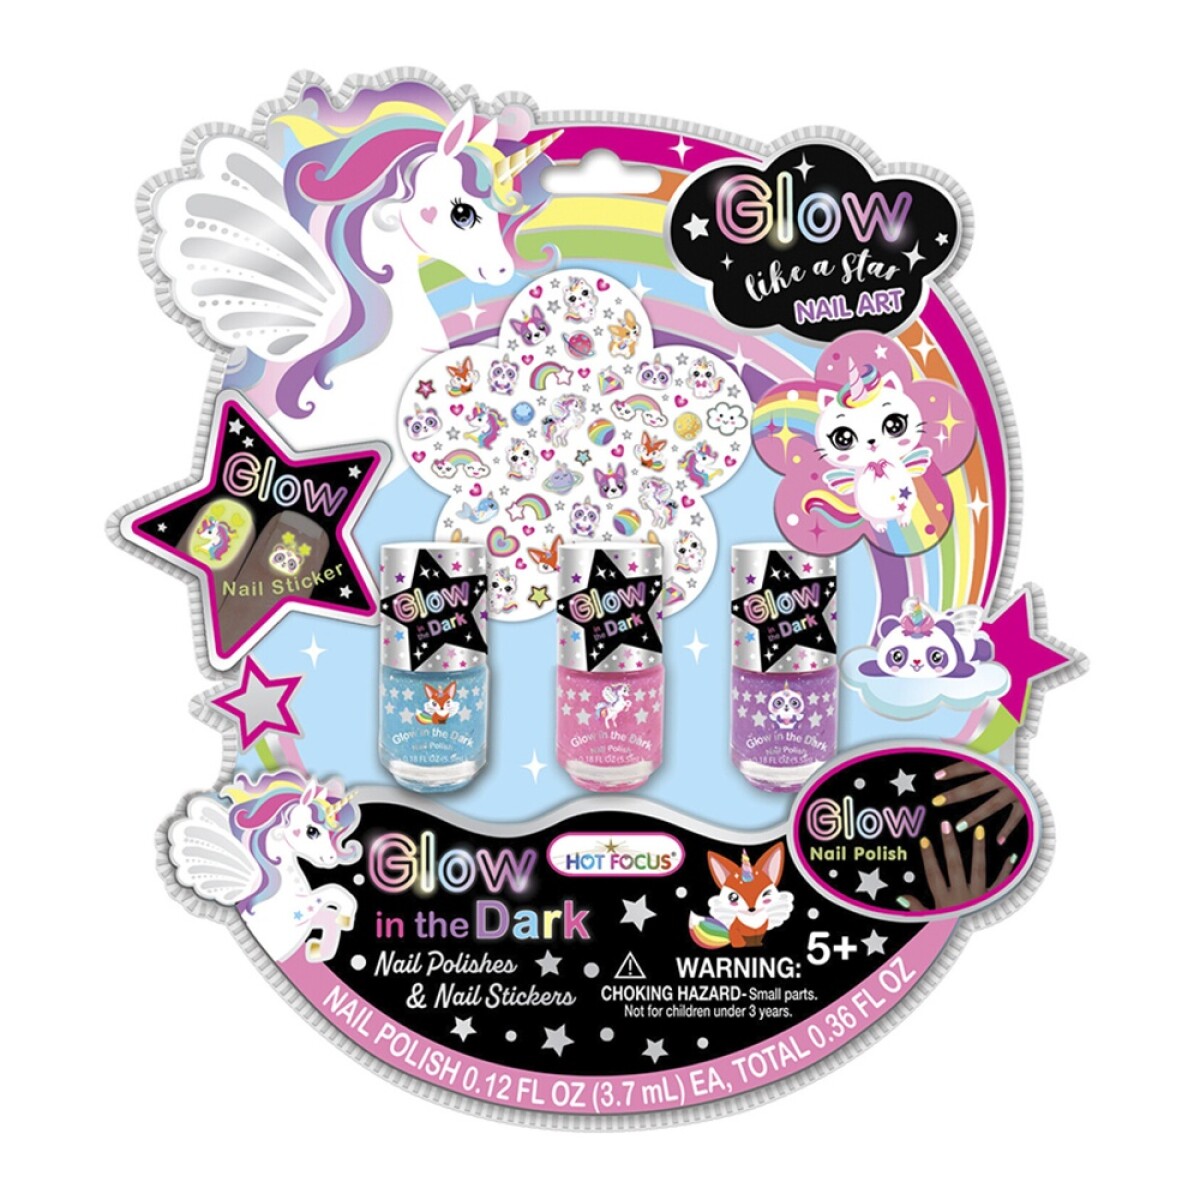 Kit Niñas Glow Dark de 3 Esmaltes y Stickers p/ Uñas + Lima - Multicolor 